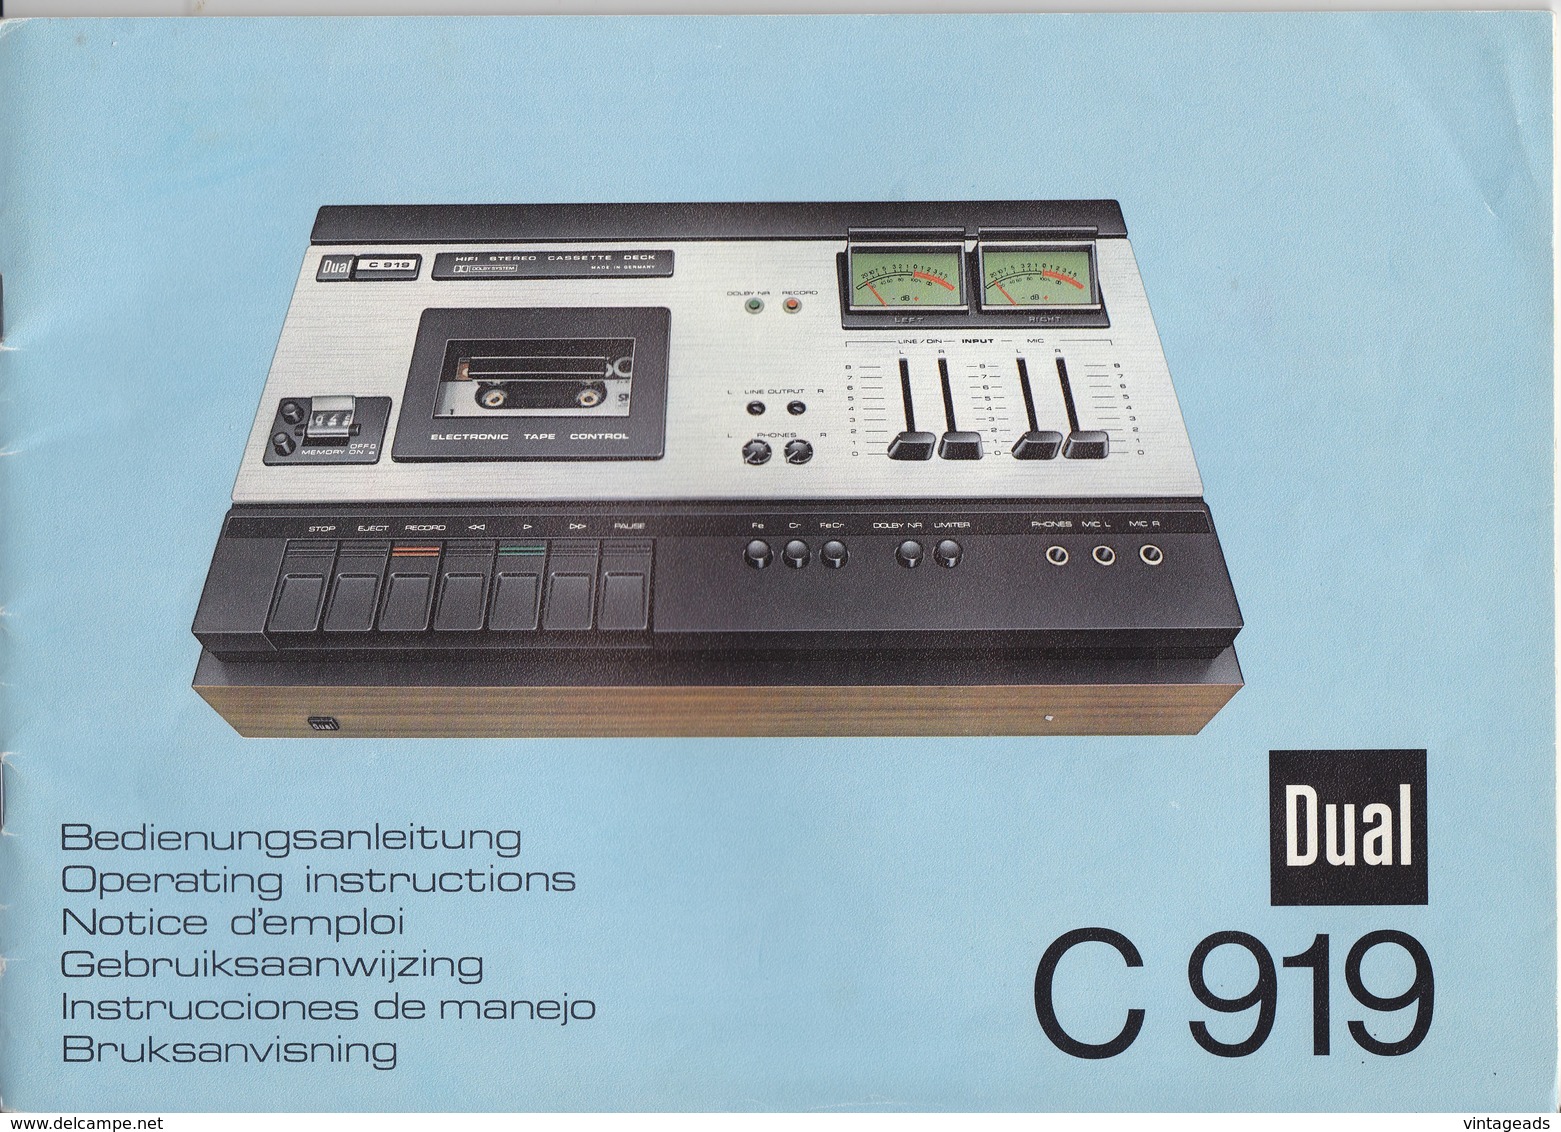 (AD387) Original Werbung Und Bedienungsanleitung DUAL C919 Kassettendeck, 1976 - Shop-Manuals